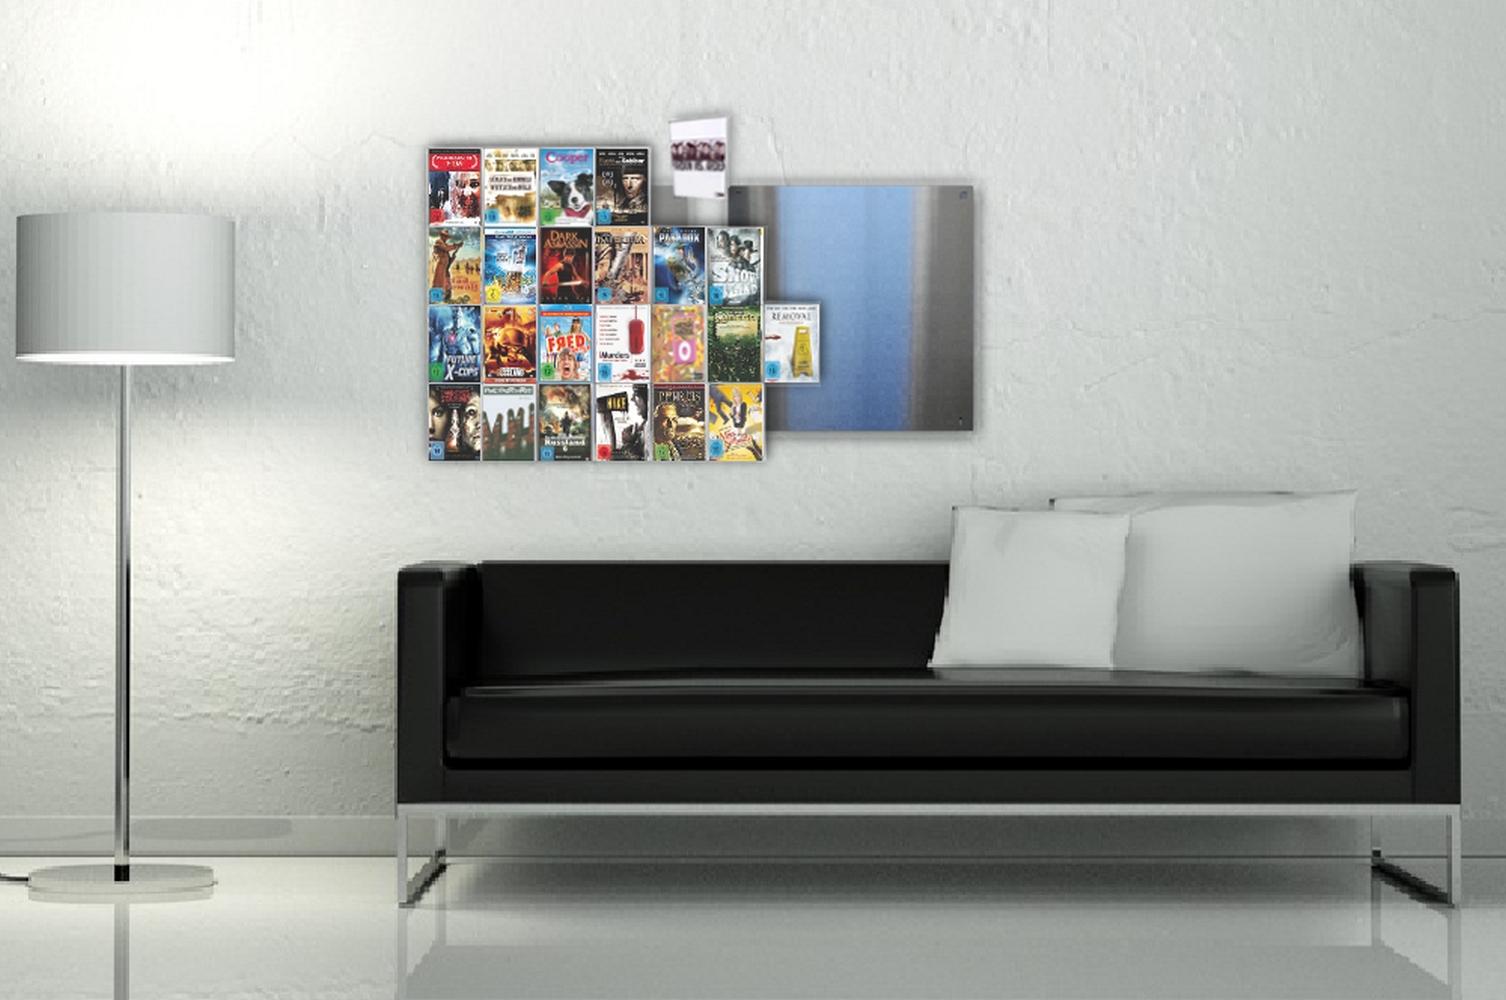 DVD-Wandregal für Wohnräume und Heimkinos #wandregal #dvdregal #dvdaufbewahrung ©CD-Wall